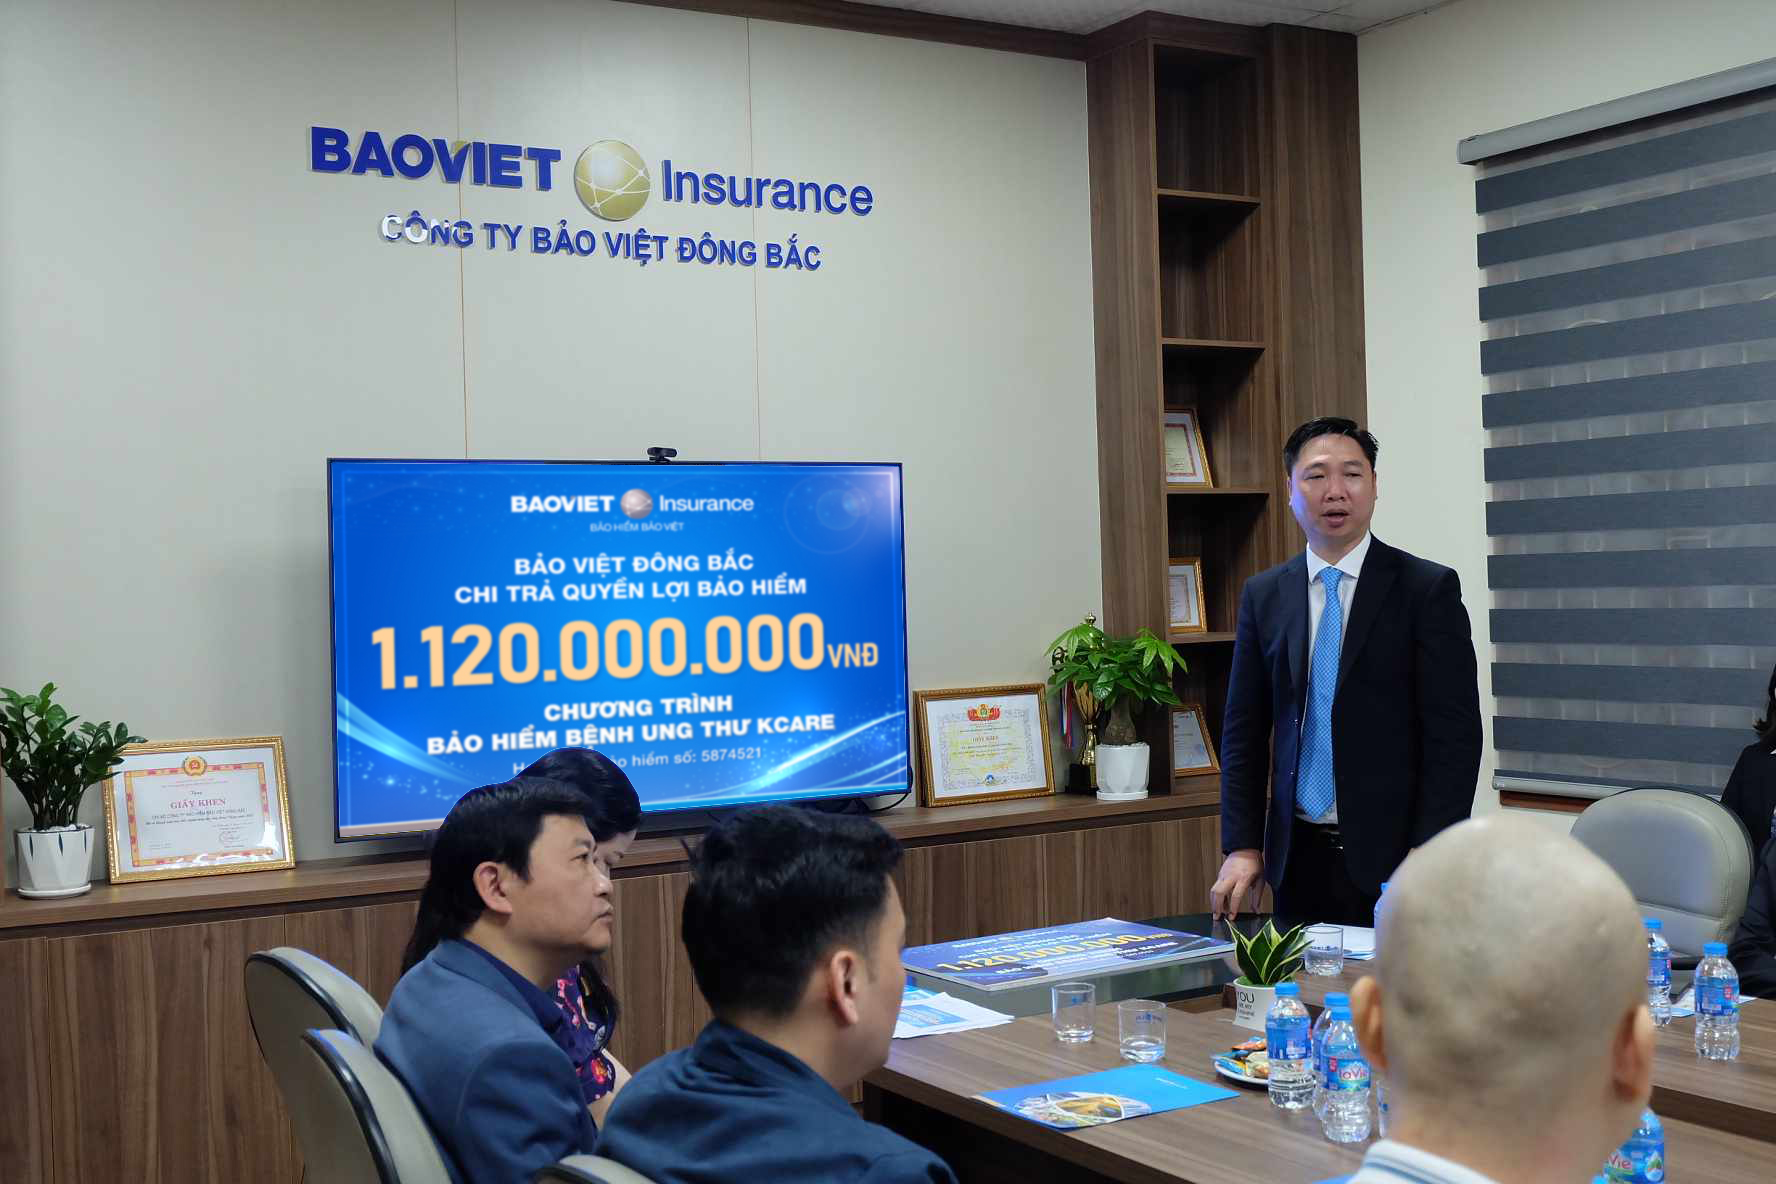 Bảo Việt chi trả quyền lợi bảo hiểm hơn 1 tỷ đồng cho khách hàng tham gia chương trình Bảo hiểm bệnh Ung thư K-Care